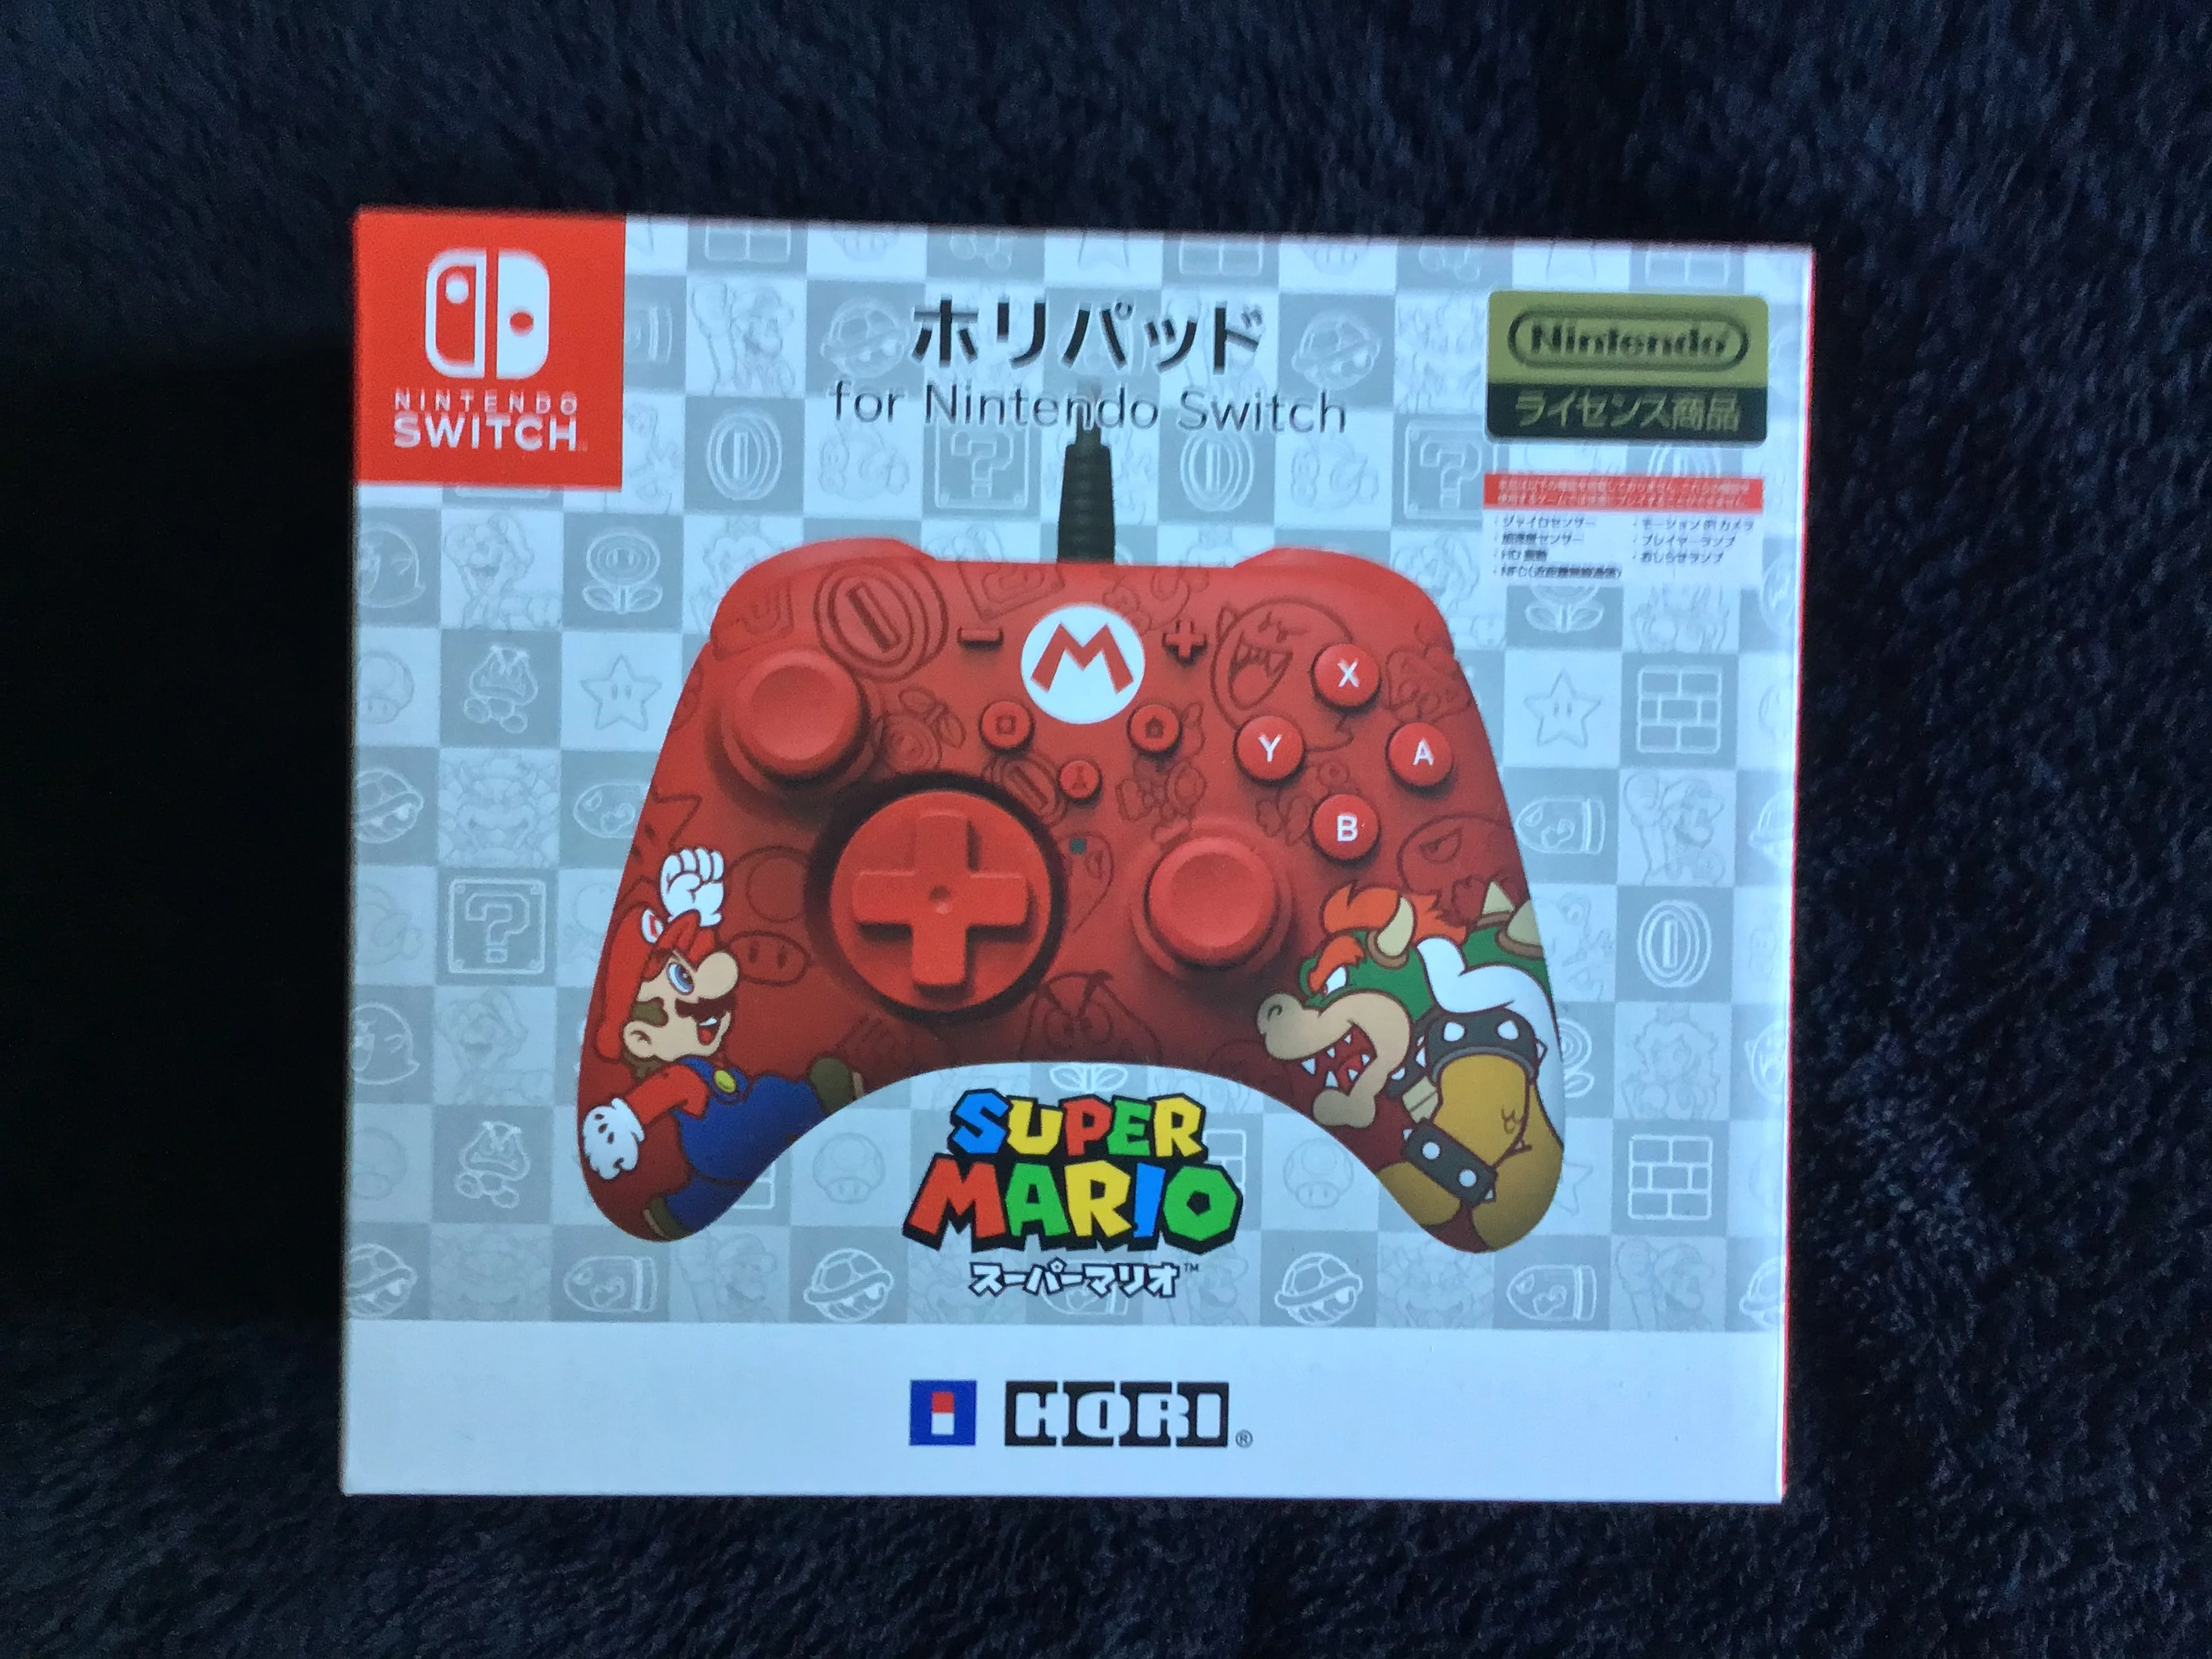  Hori Nintendo Switch Mario VS Bowser Controller [JP]